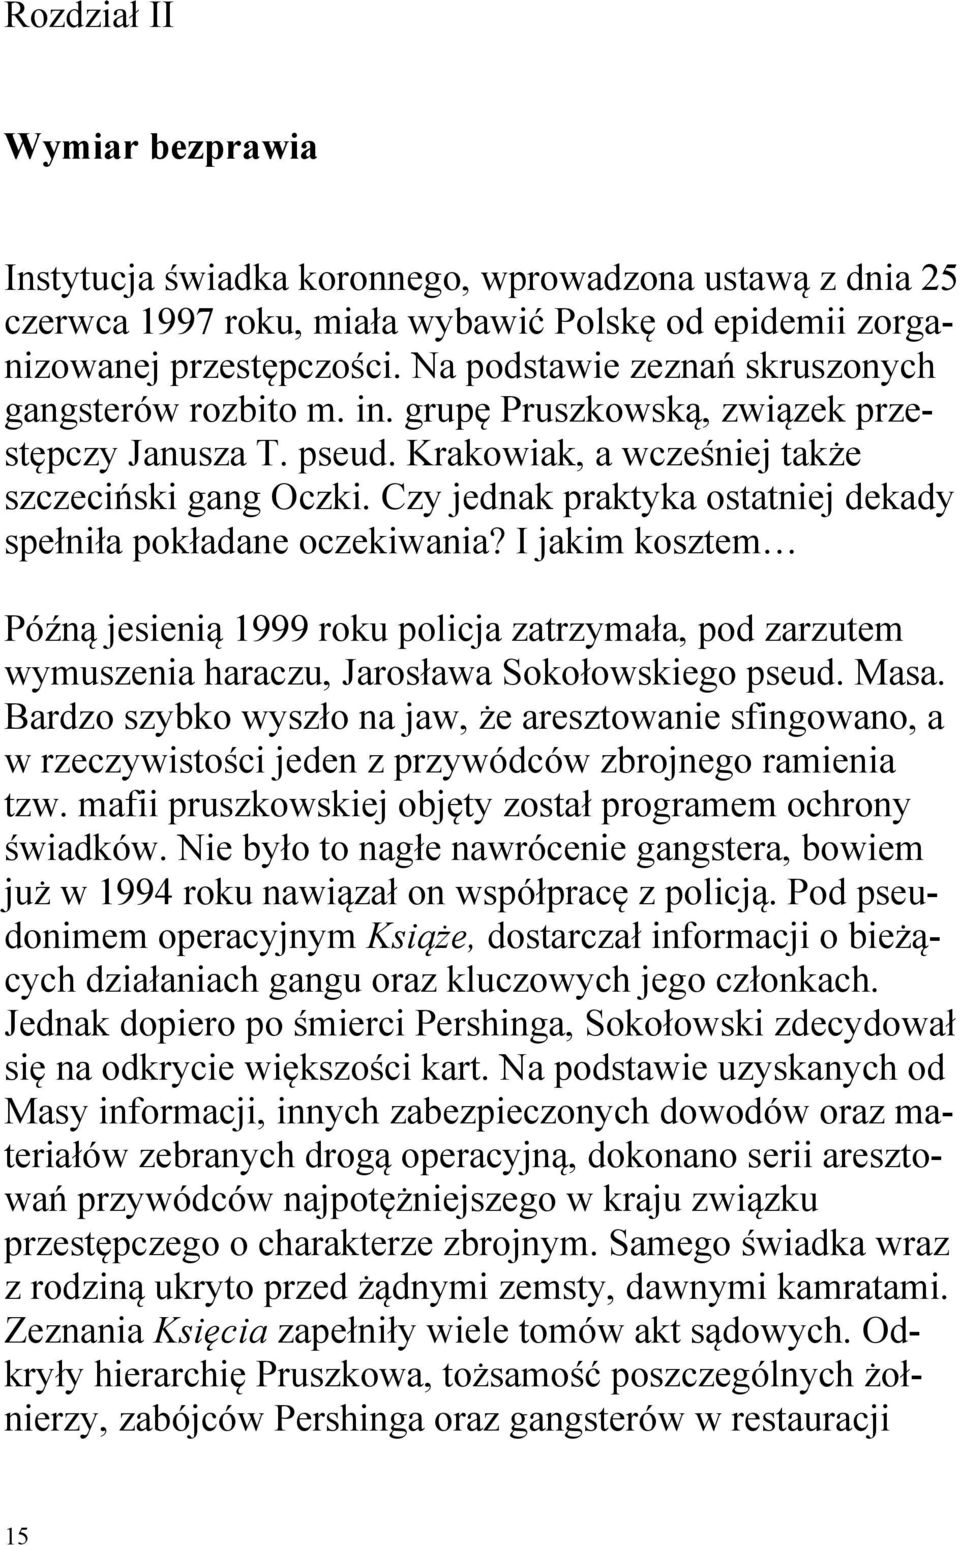 Czy jednak praktyka ostatniej dekady spełniła pokładane oczekiwania? I jakim kosztem Późną jesienią 1999 roku policja zatrzymała, pod zarzutem wymuszenia haraczu, Jarosława Sokołowskiego pseud. Masa.